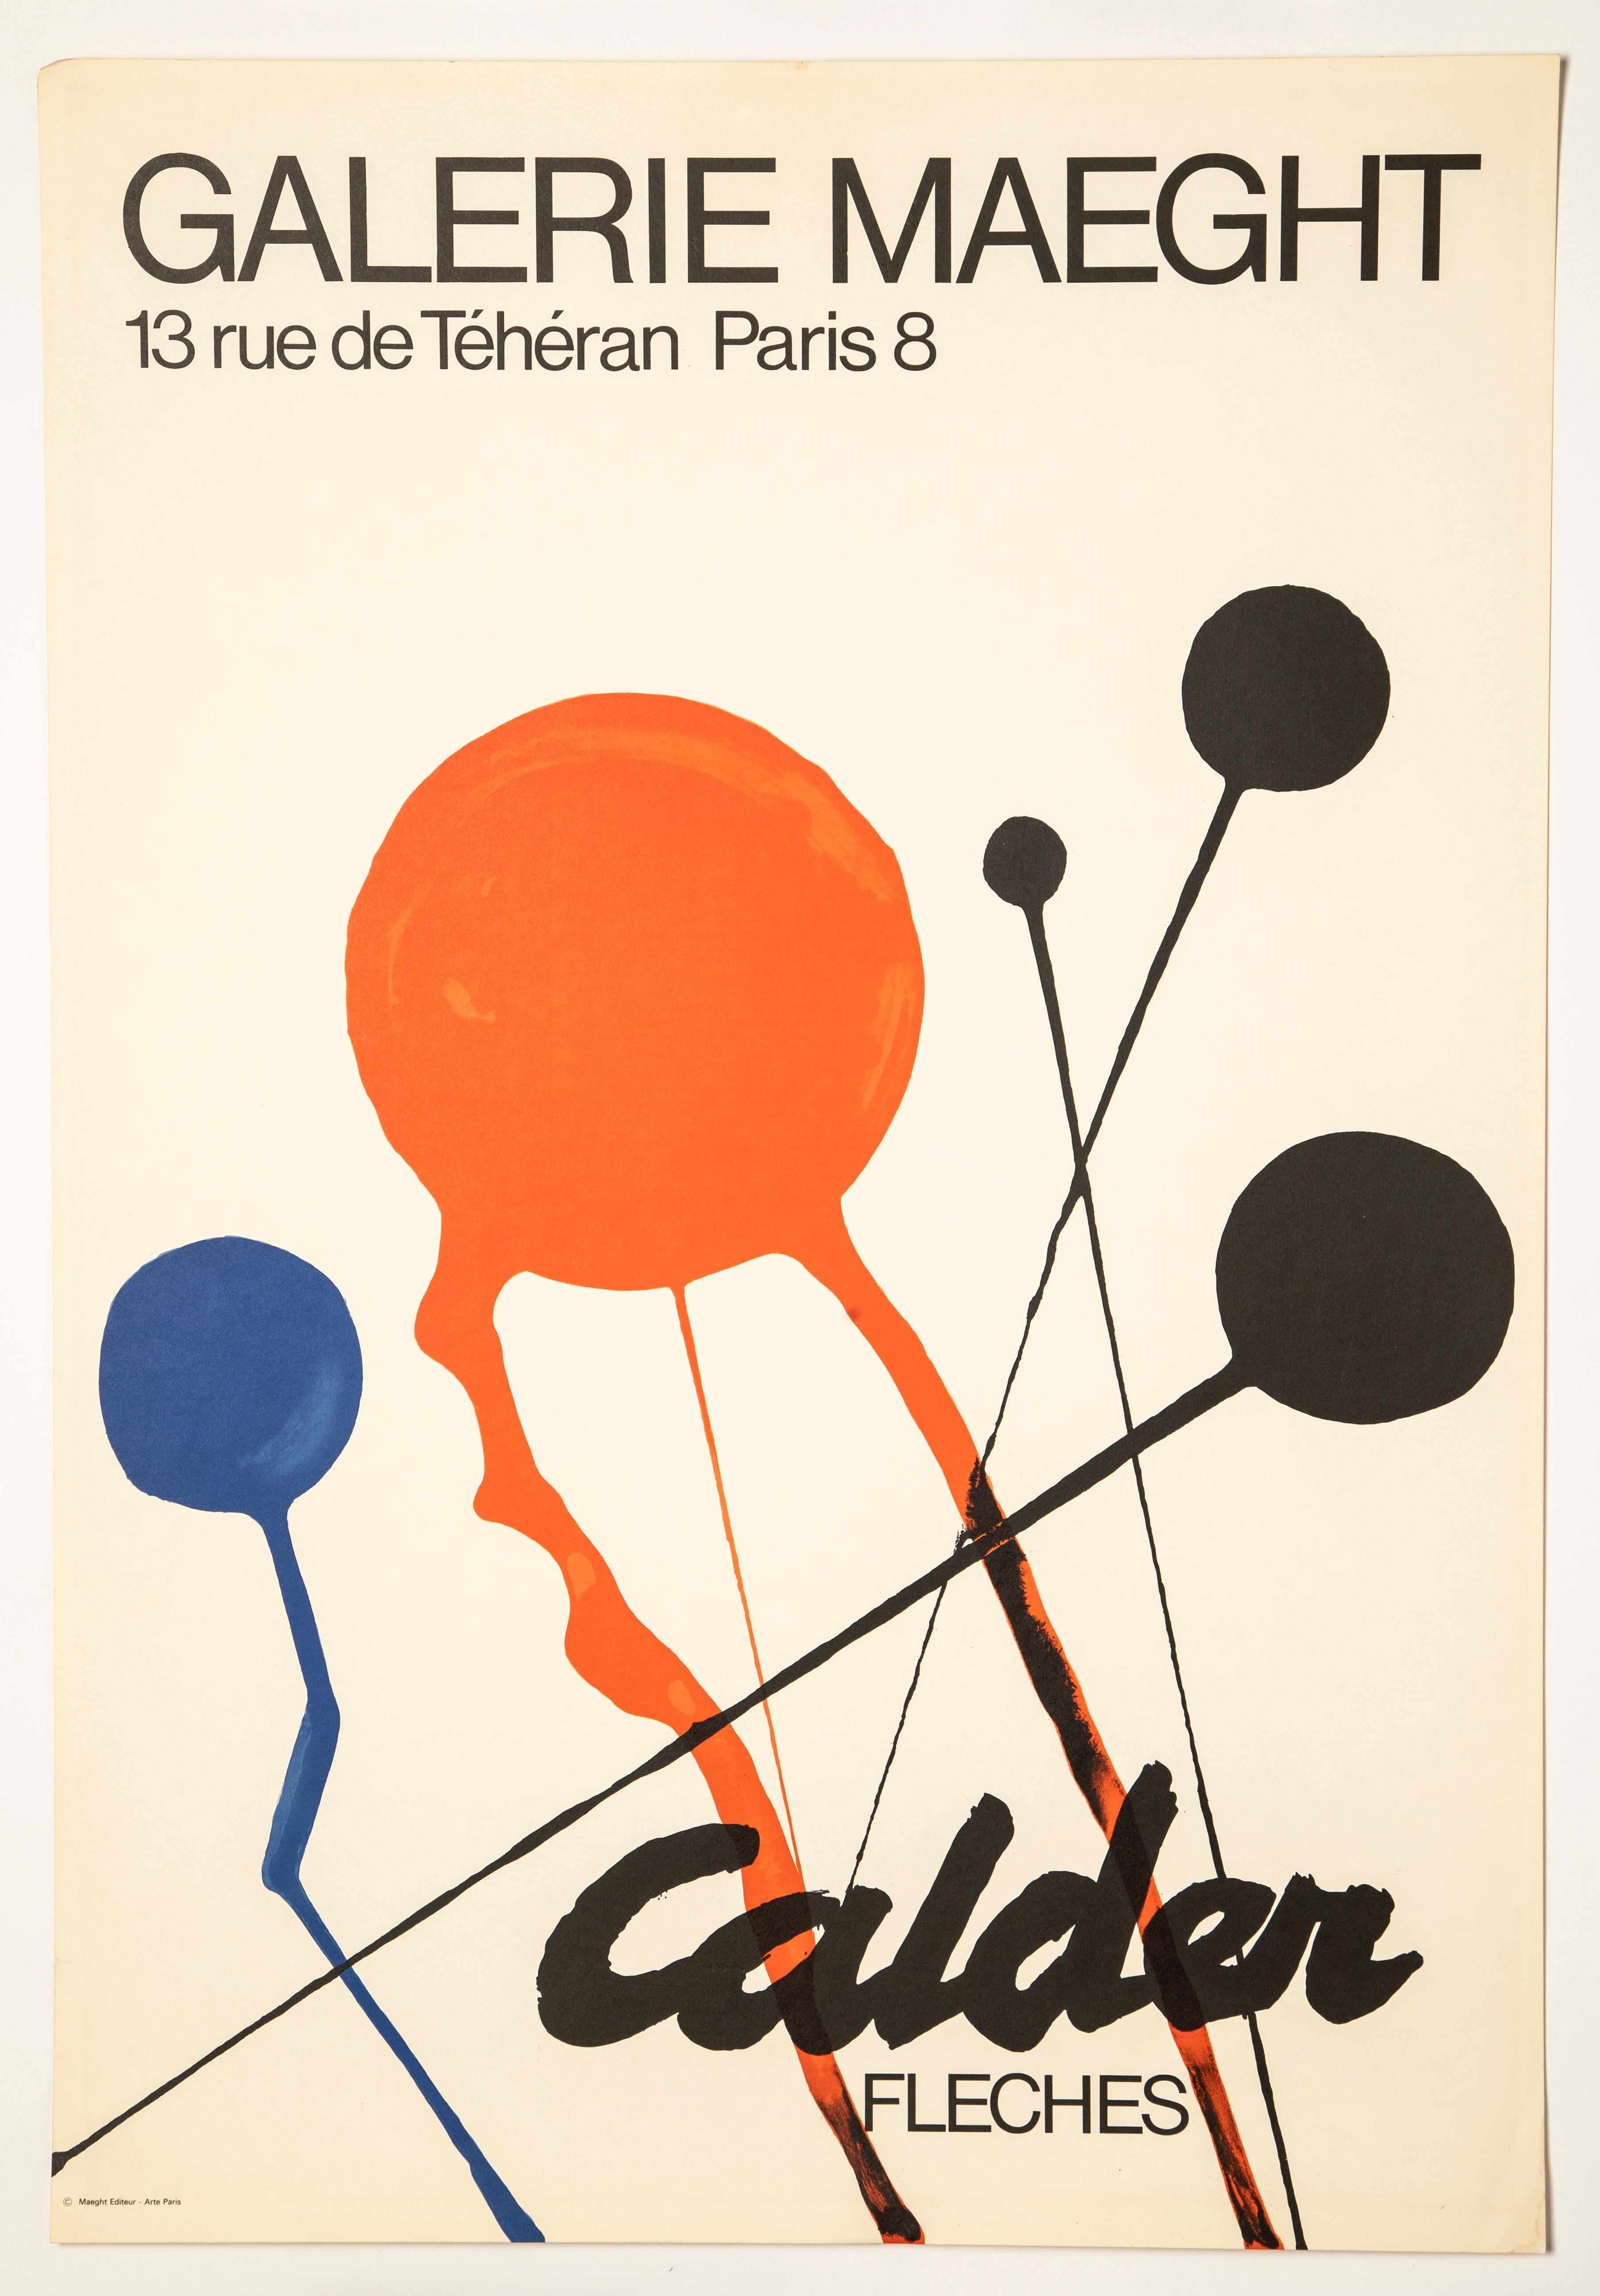 ALEXANDER CALDER - FLECHES (GALERIE MAEGHT), 1970 - AFFICHE LITHOGRAPHIQUE
Alexander Calder (1898-1976)
Fleches (Galerie Maeght, 1970)
Imprimé pour l'exposition d'Alexander Calder, intitulée 